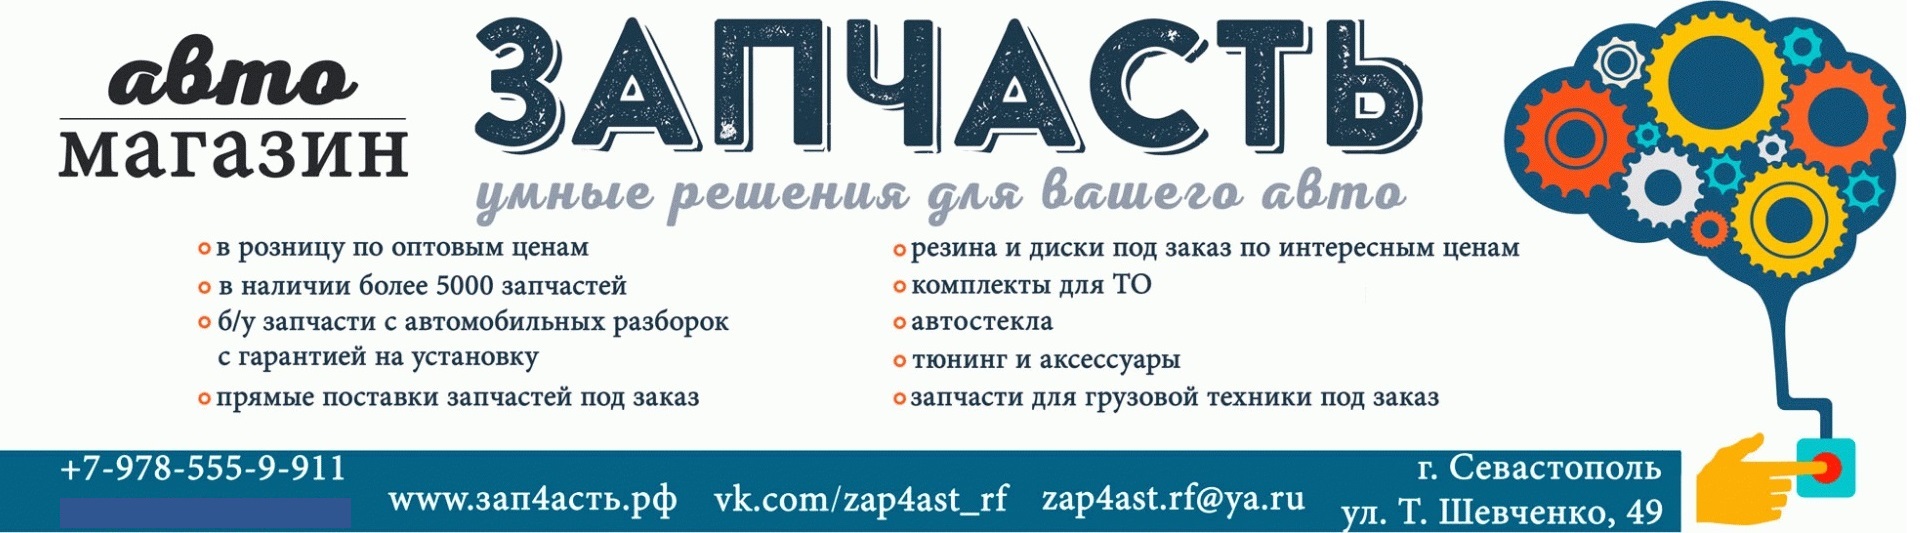 Интернет-магазин автомобильных запчастей- Зап4асть.РФ